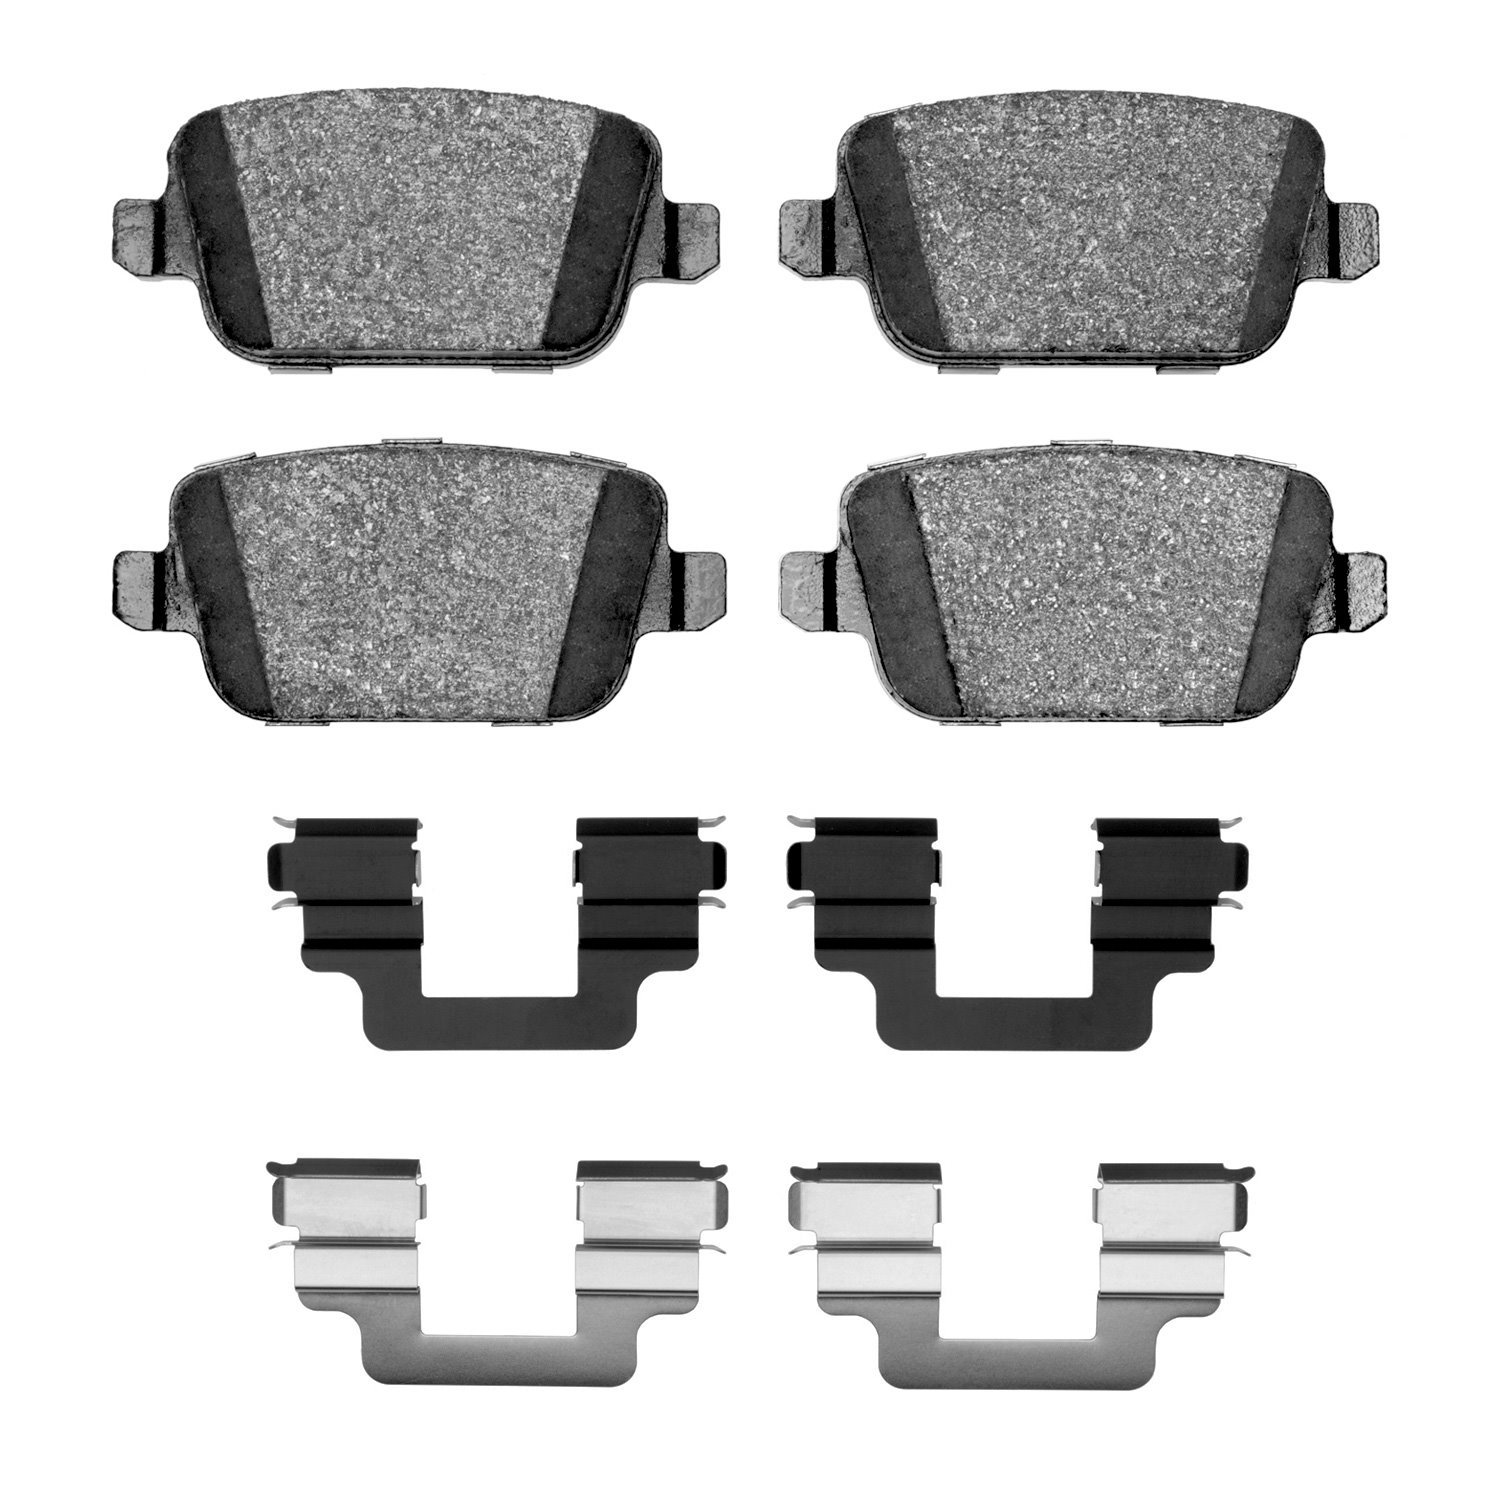 1311-1314-02 3000-Series Semi-Metallic Brake Pads & Hardware Kit, 2008-2012 Land Rover, Position: Rear